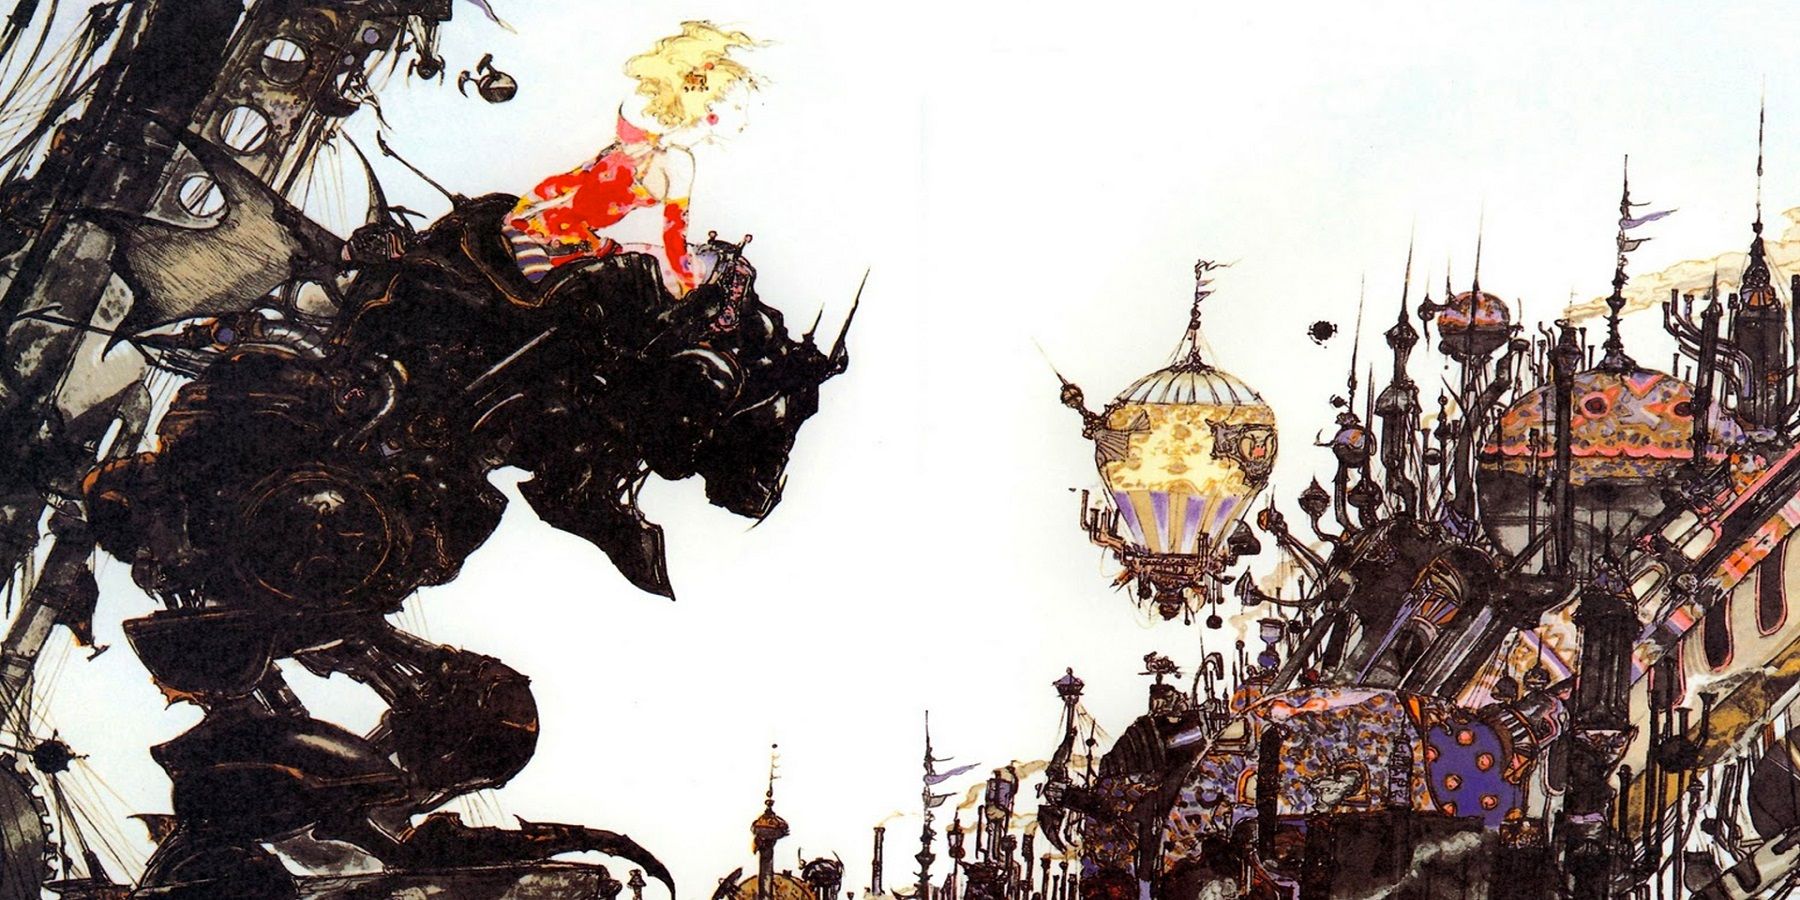 Надпись на AEW Dynamite гласит, что Final Fantasy 14 лучше, чем Final Fantasy 6.